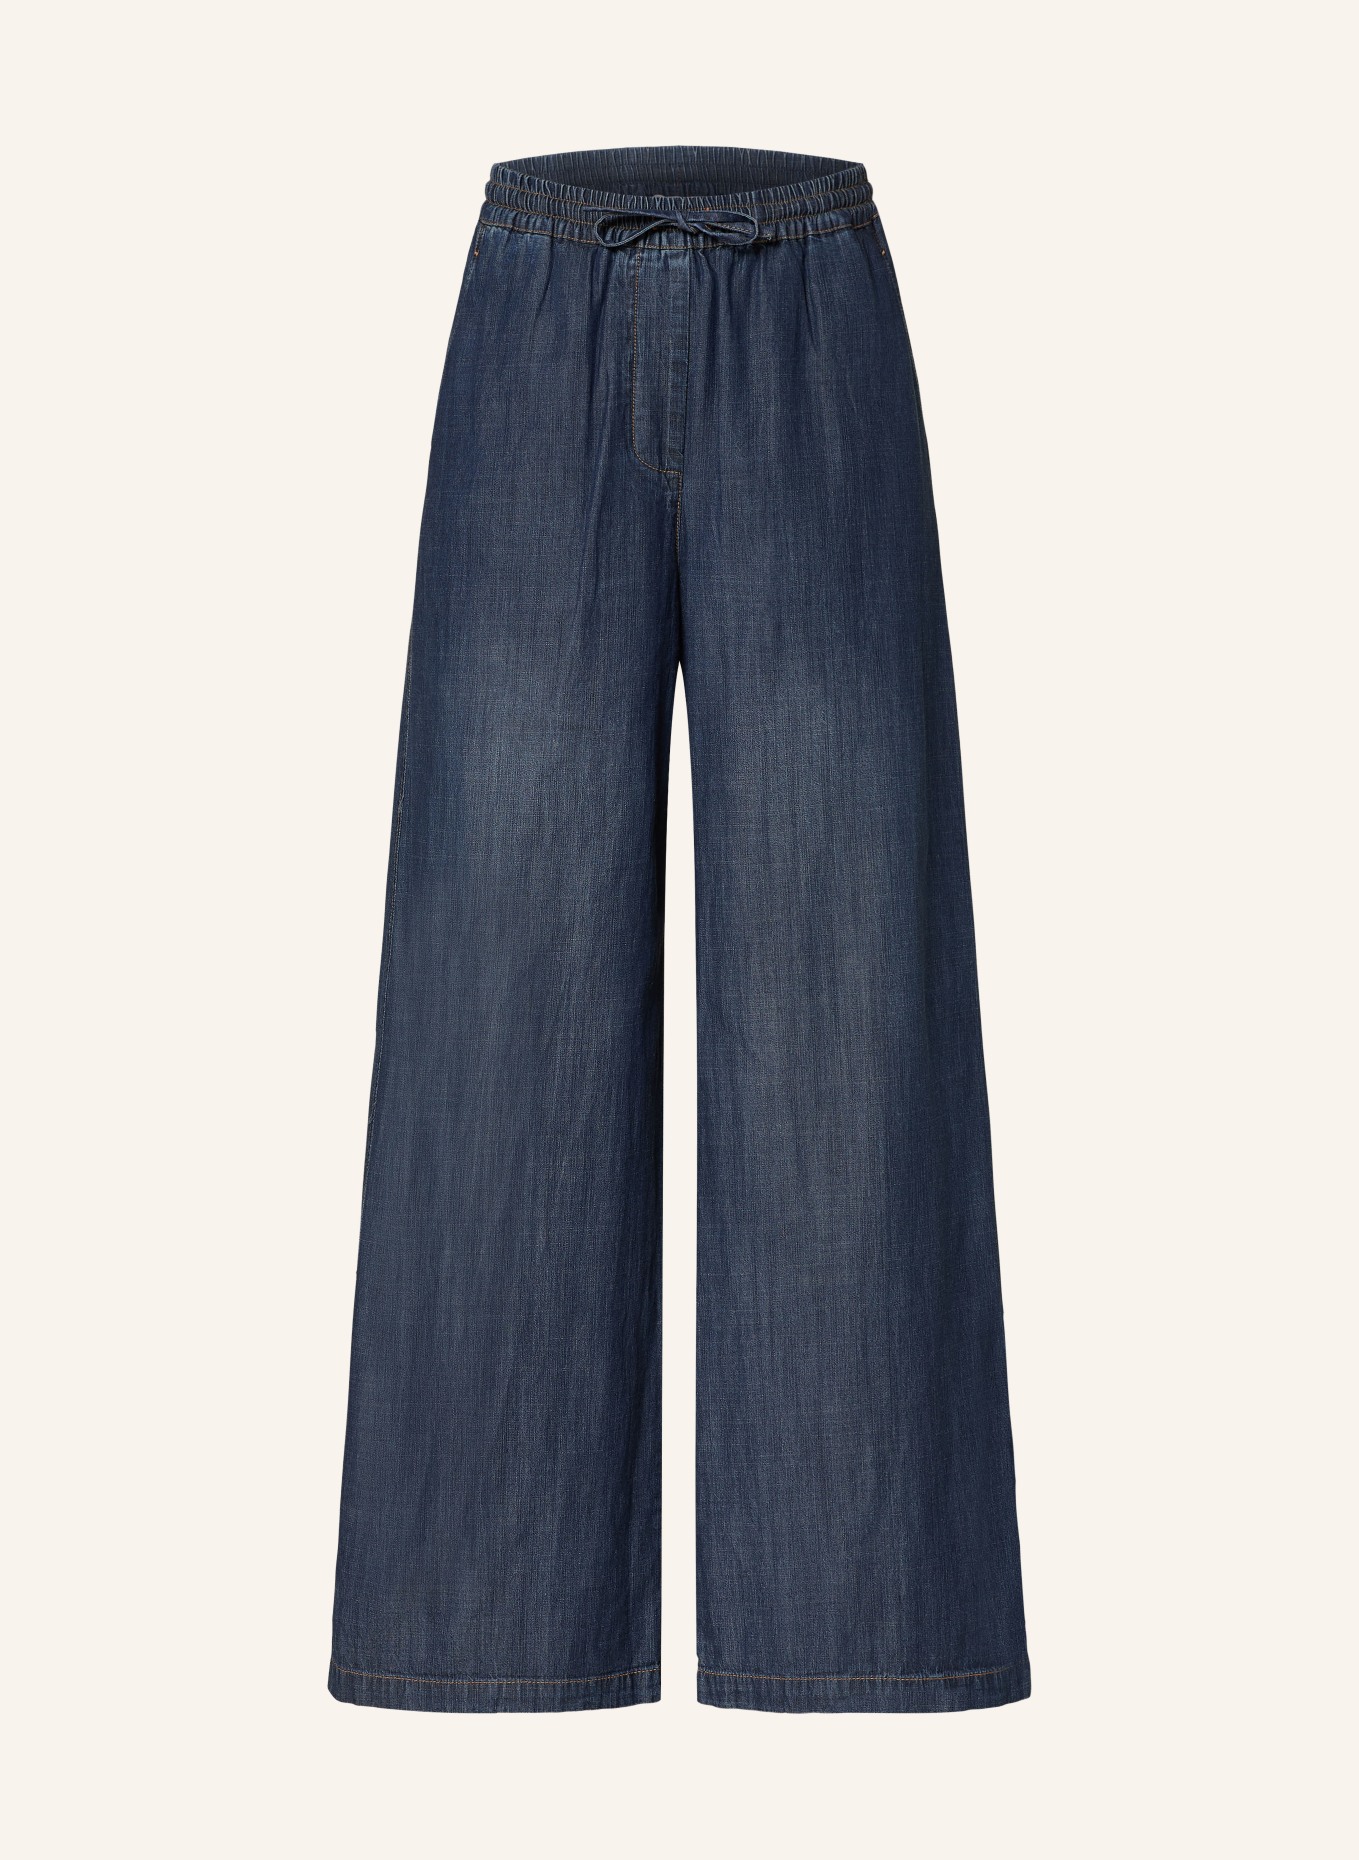 REISS Spodnie CARTER w stylu jeansowym, Kolor: 31 MID BLUE (Obrazek 1)